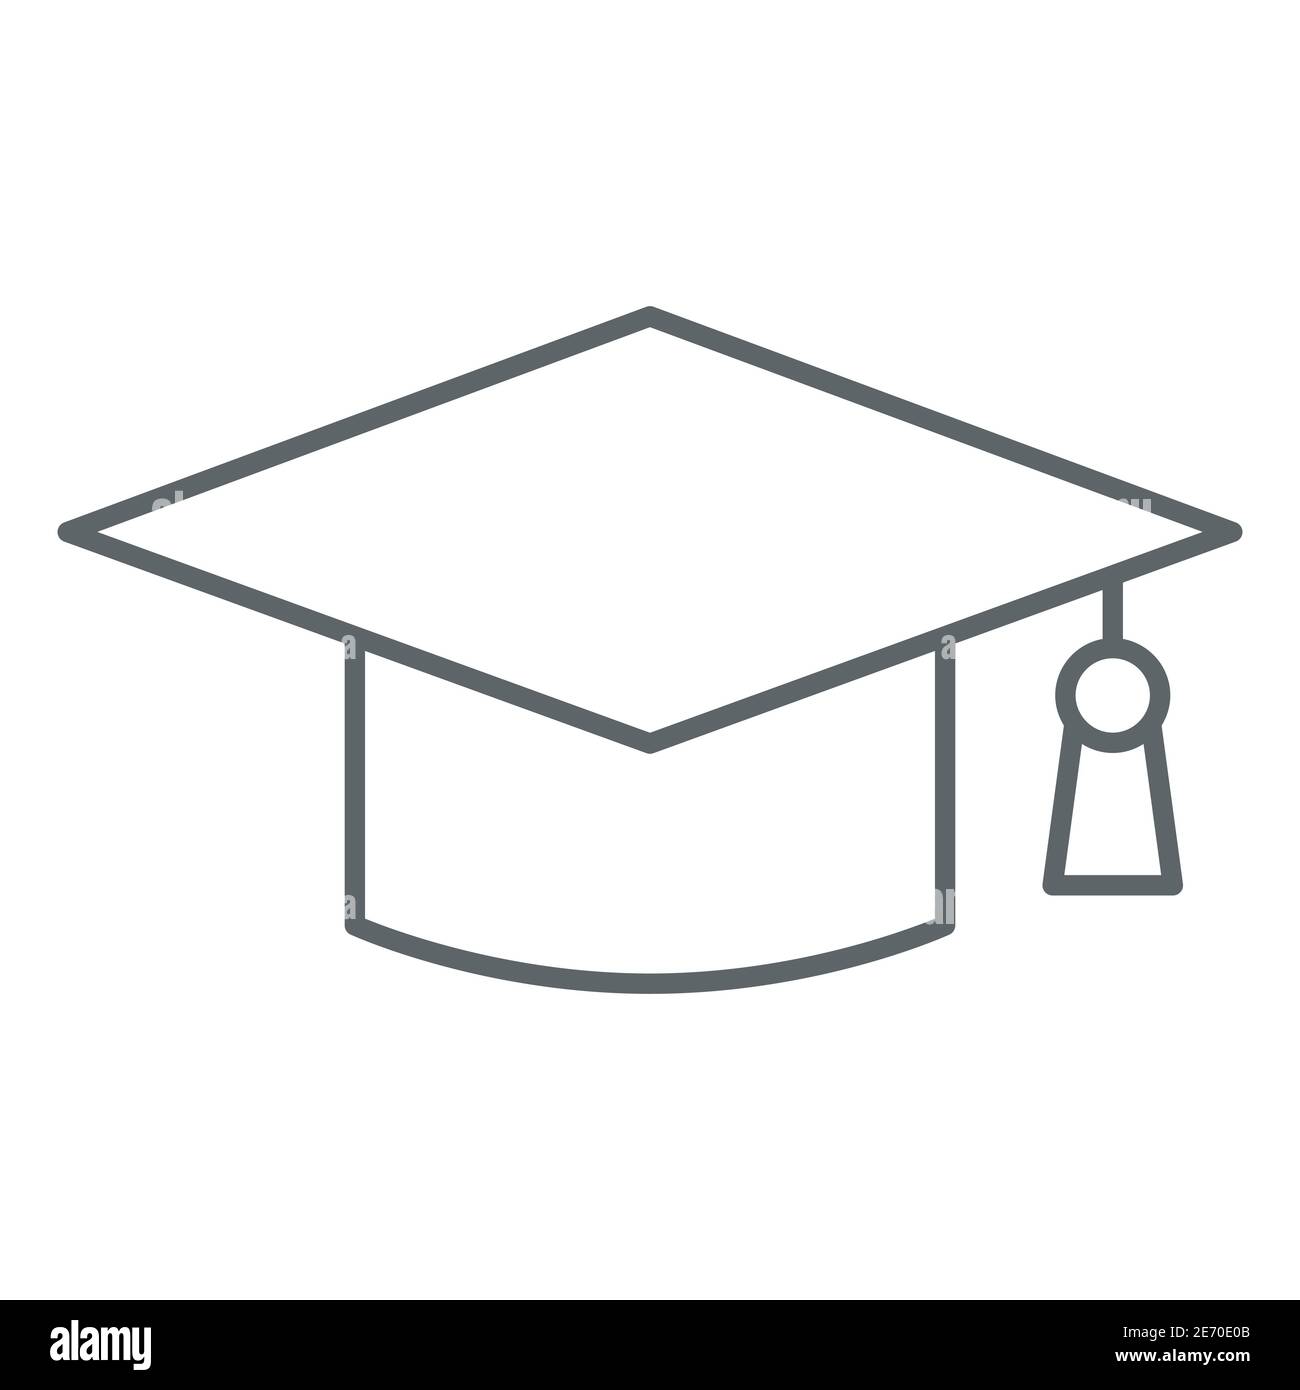 simple graduation cap outline